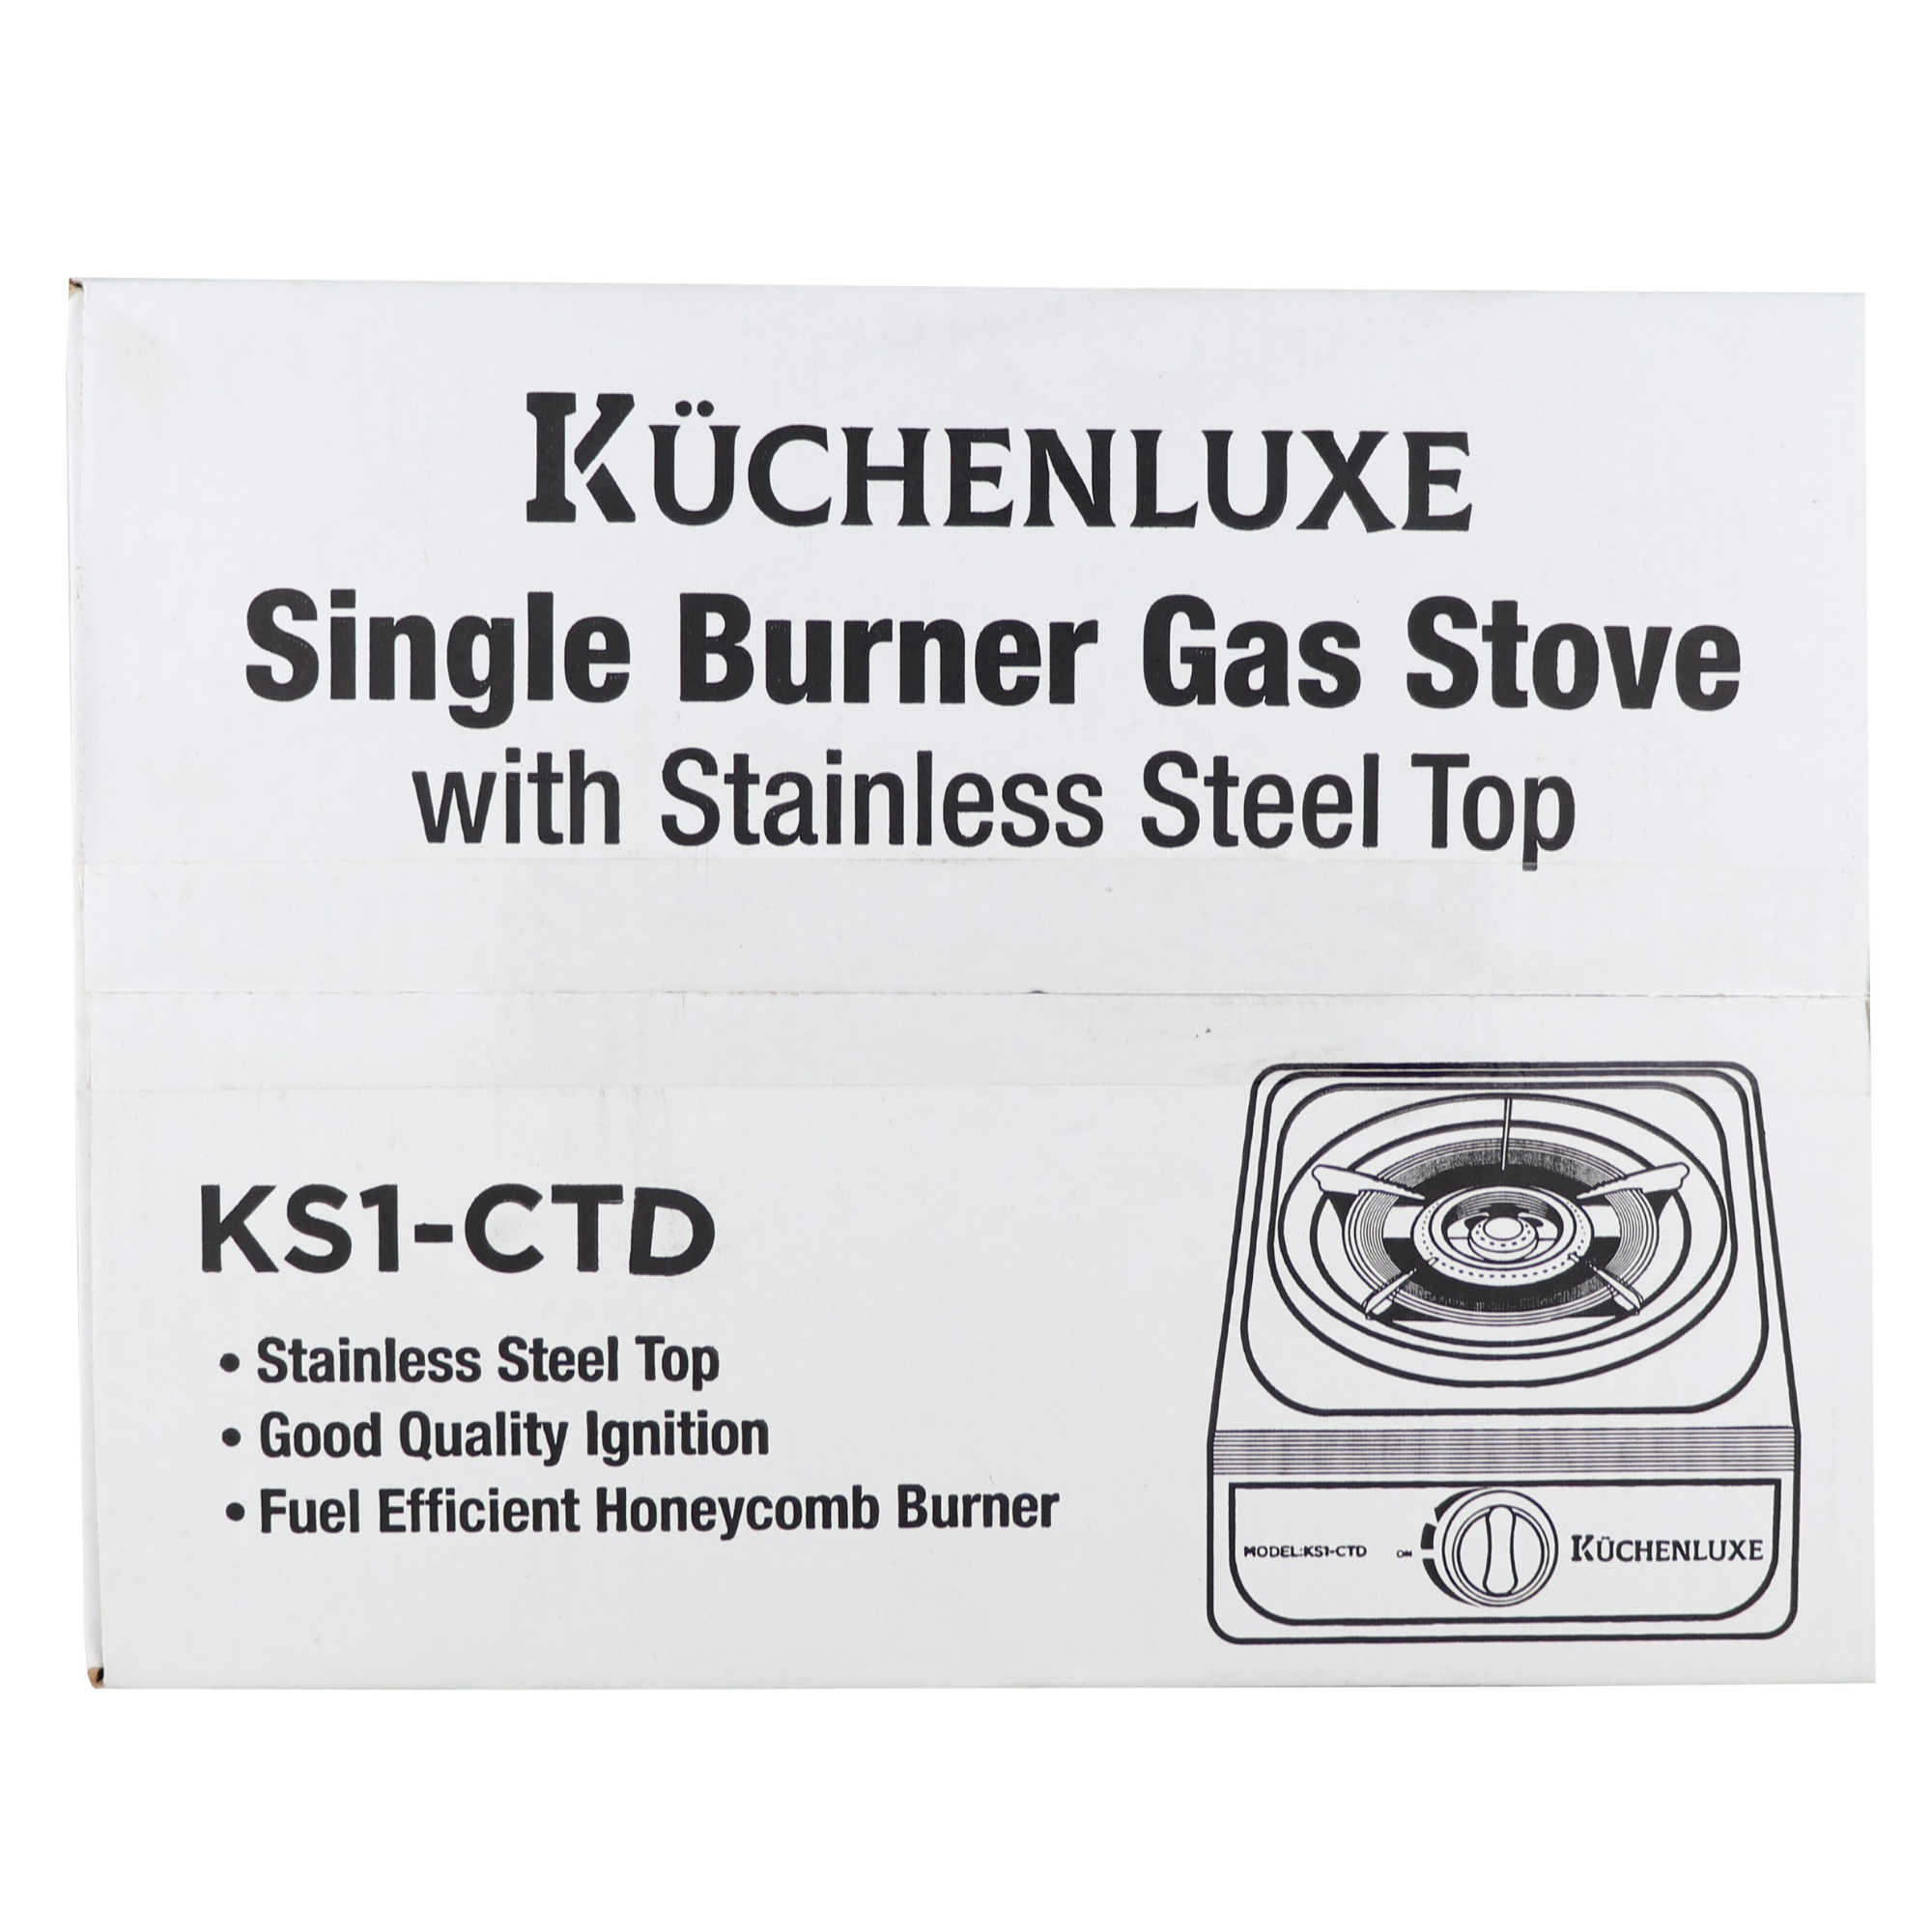 Kuchenluxe Single Burner Gas Stove KS1-CTD